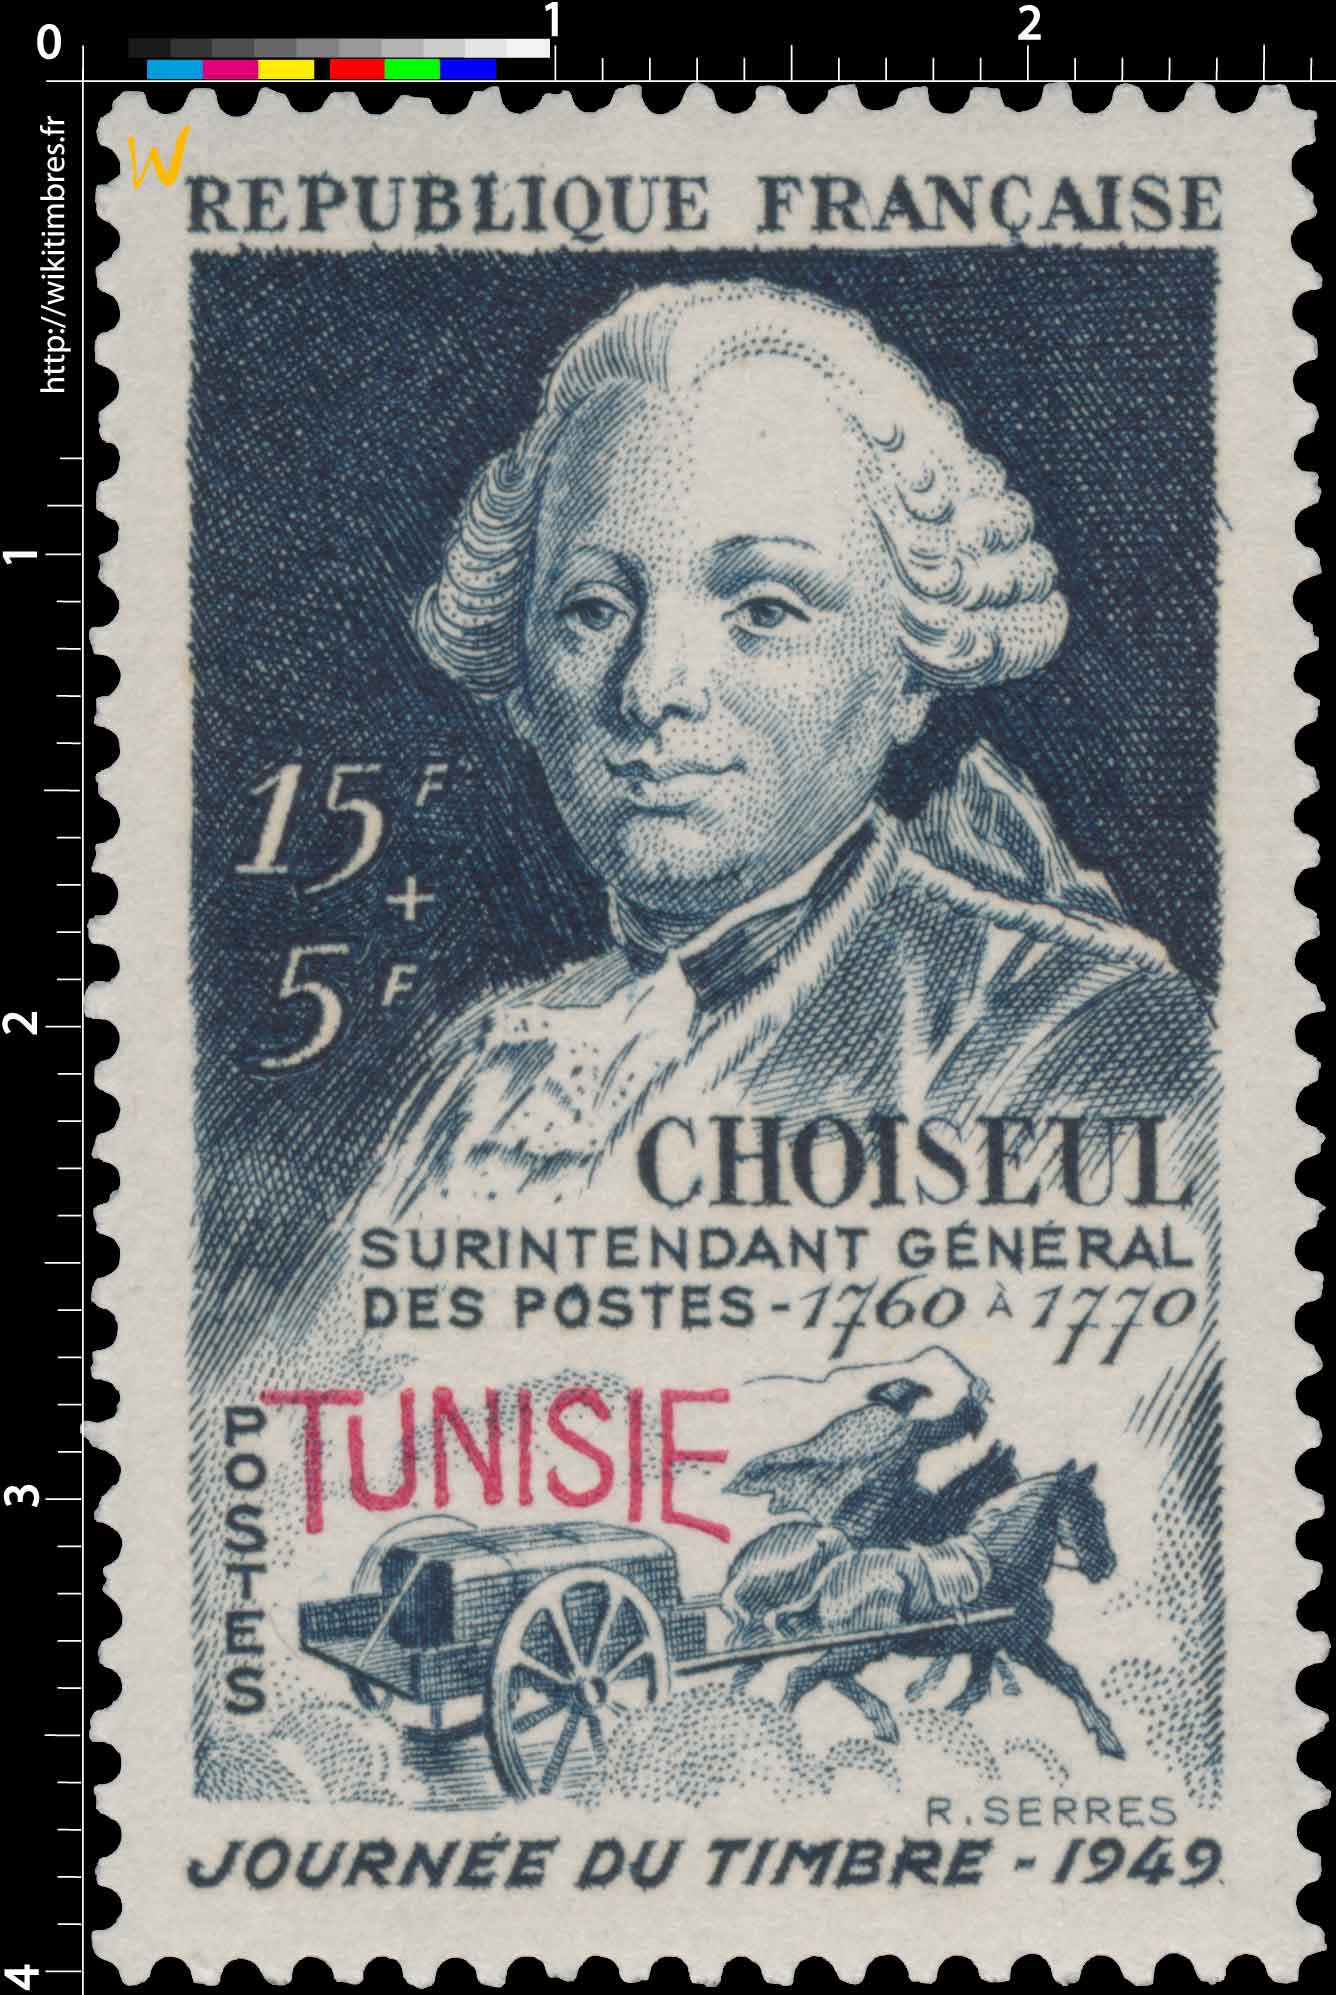 Tunisie - Journée du timbre. Choiseul